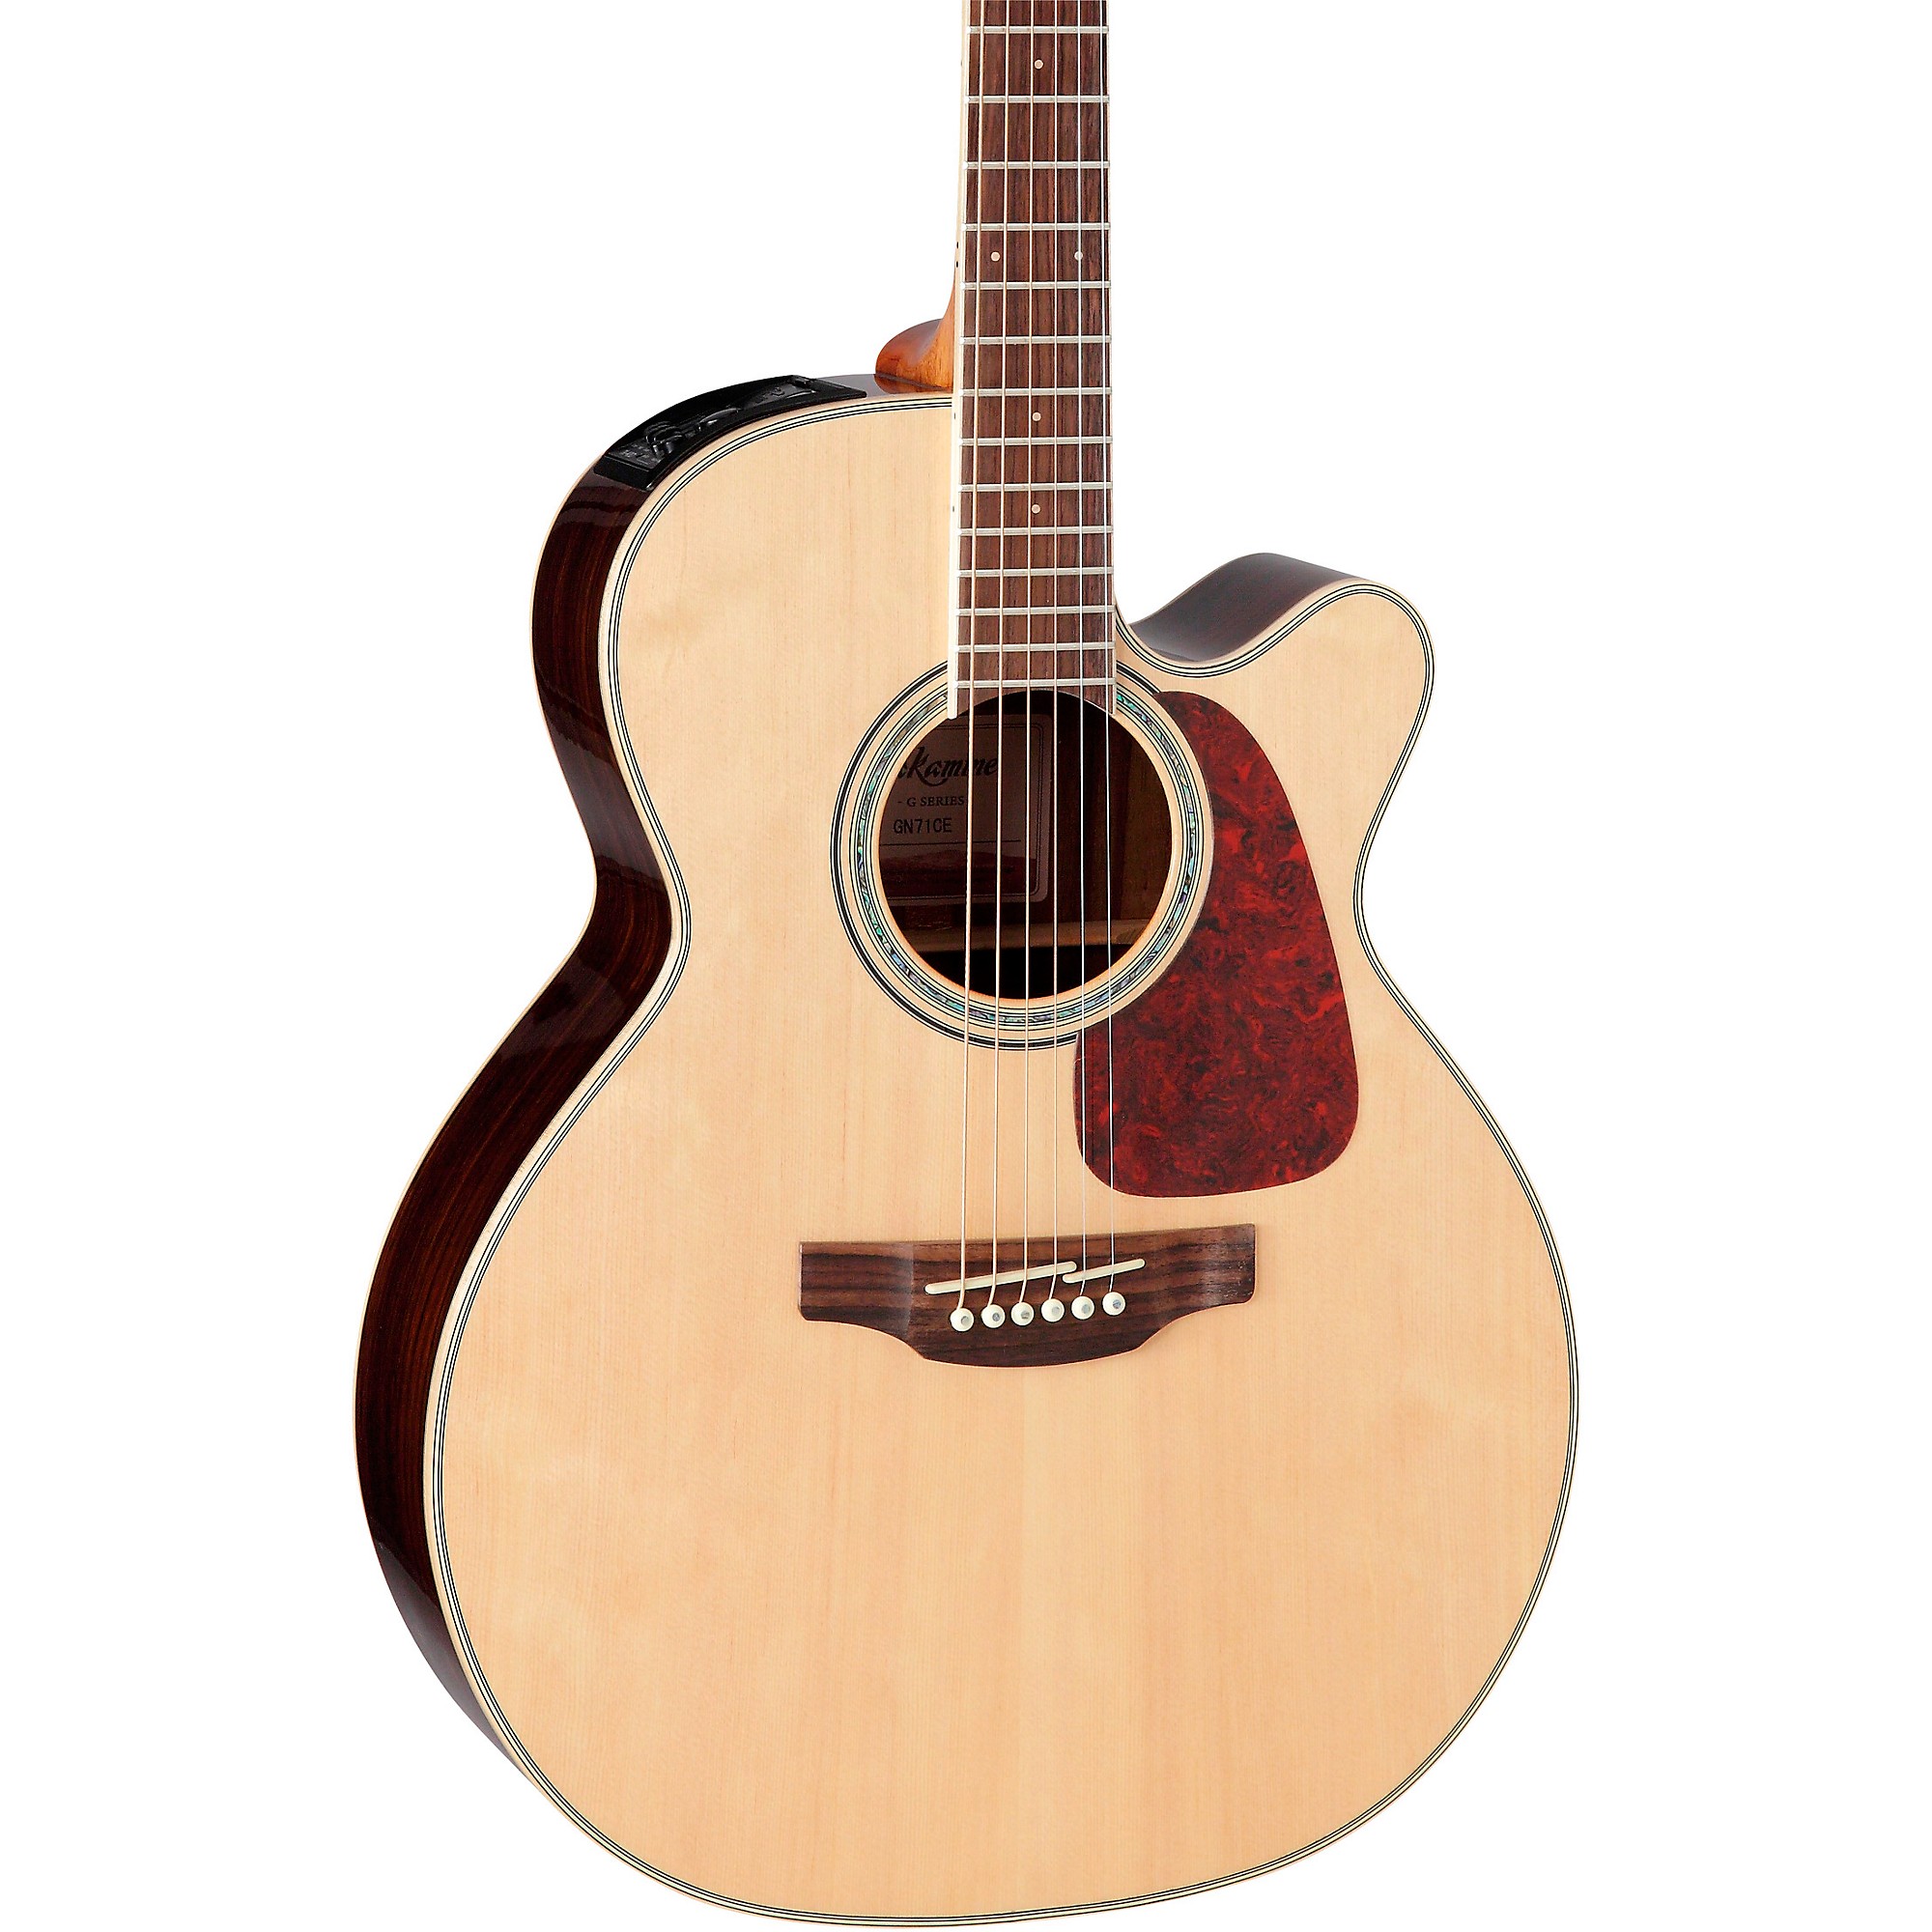 Акустически-электрическая гитара Takamine G Series GN71CE NEX Cutaway Natural takamine gn71ce nat электроакустическая гитара nex cutaway цвет натуральный